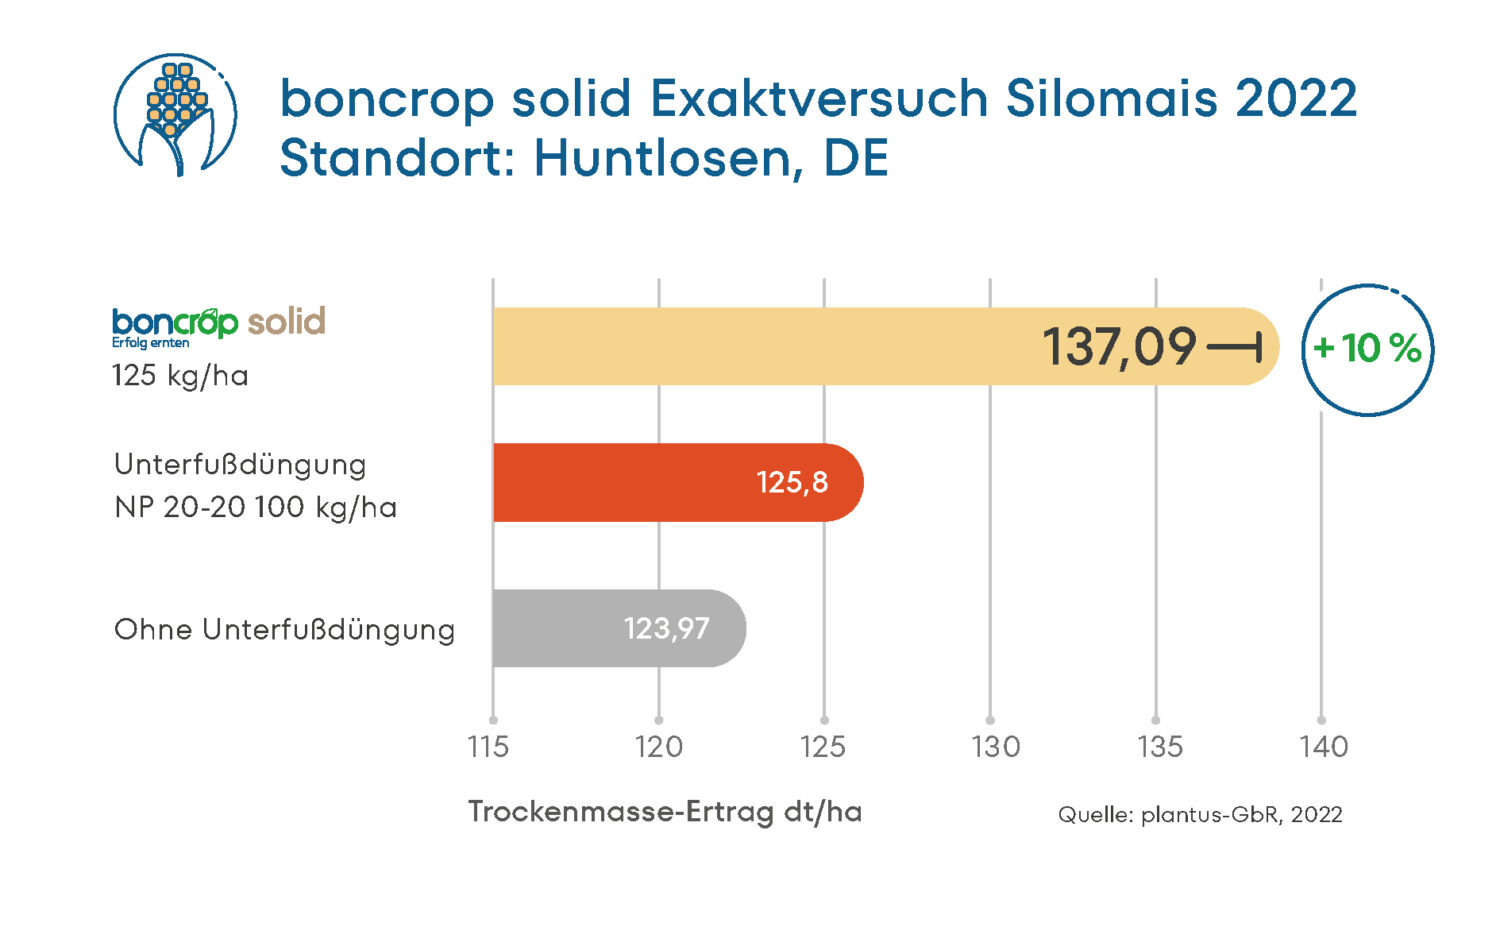 Ergebnis des Exaktversuchs zu boncrop solid in Silomais am Standort Huntlosen